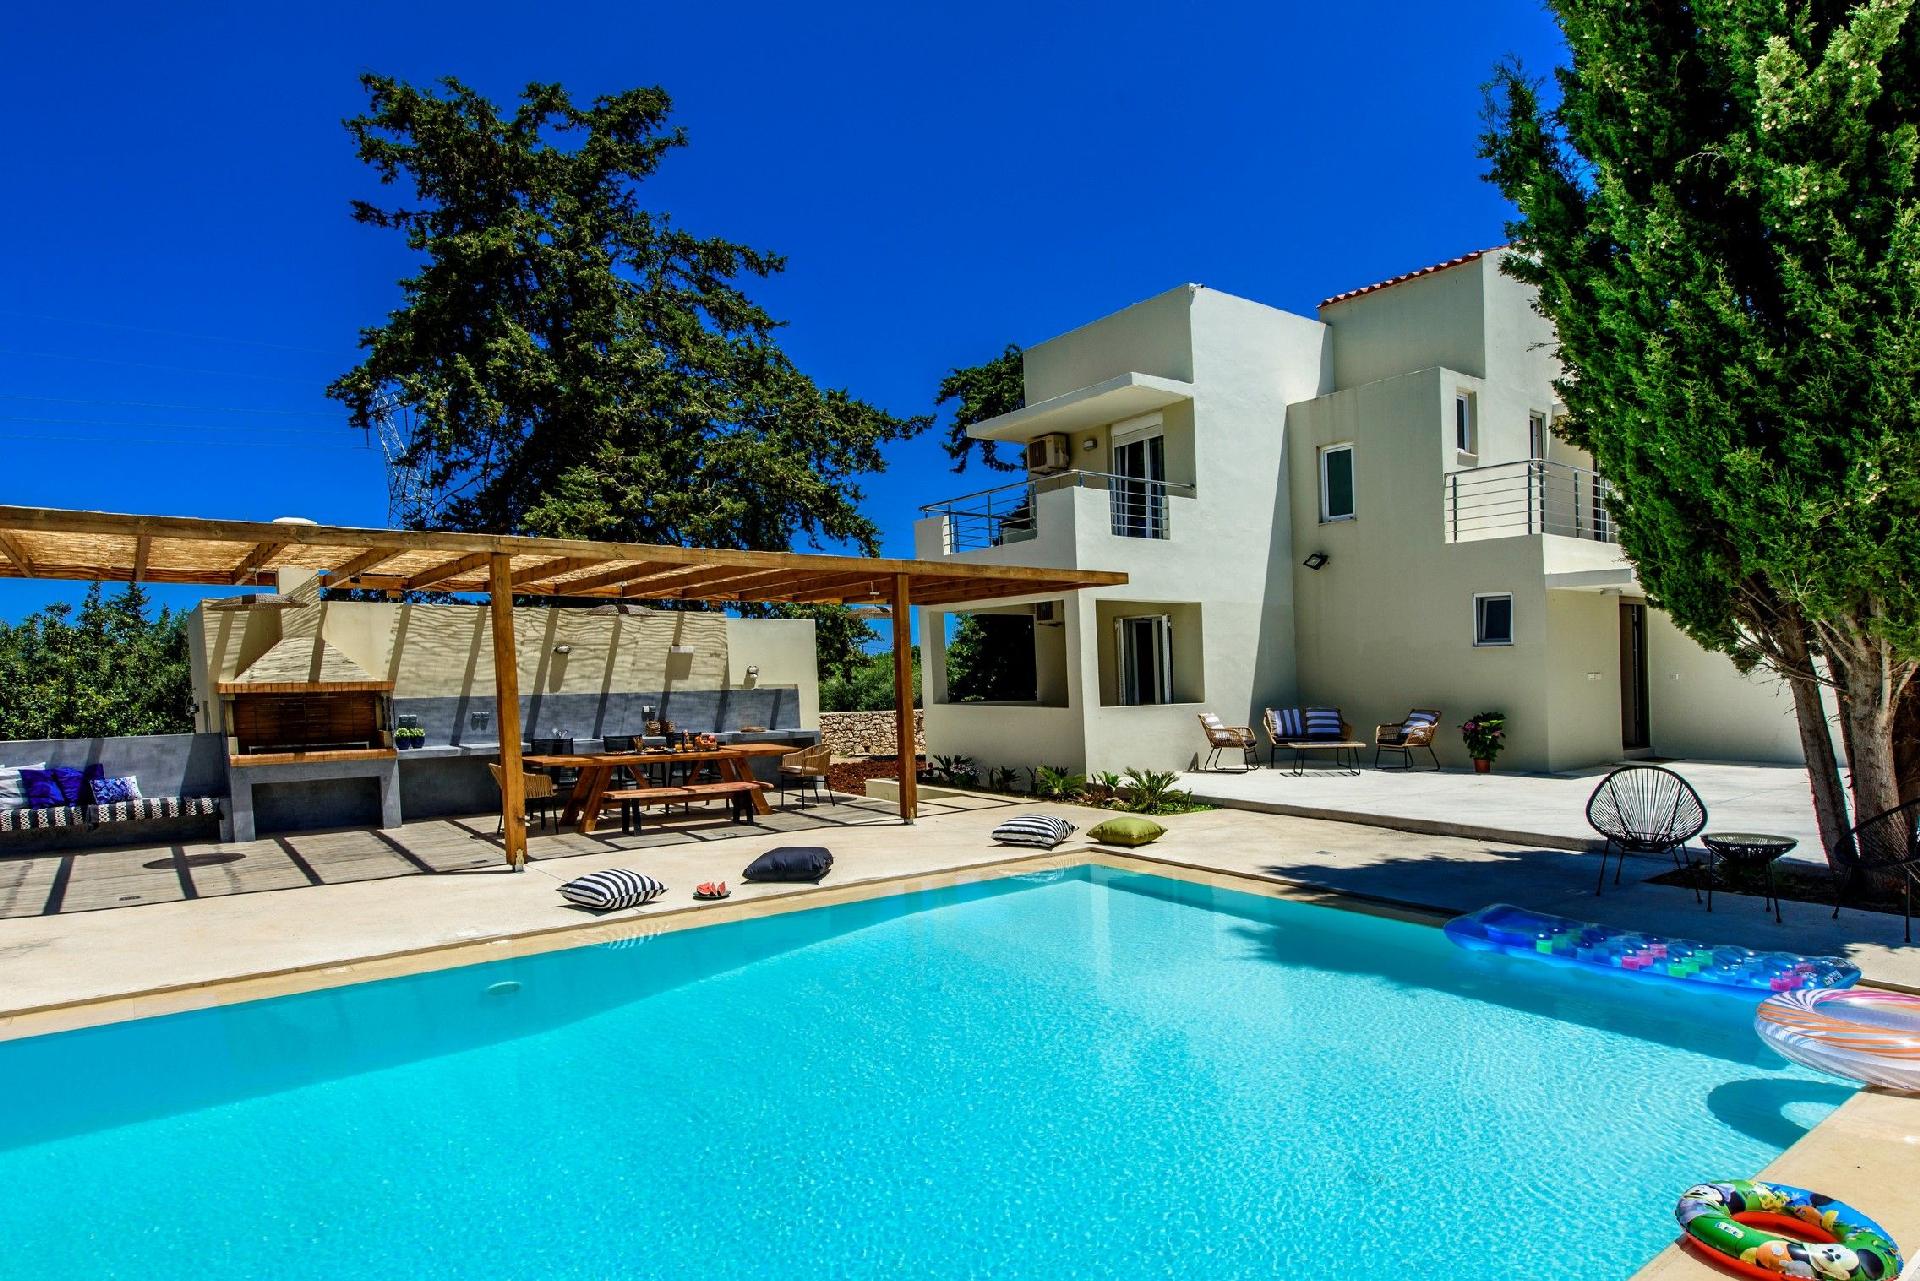 Ferienhaus mit Privatpool für 8 Personen  + 2 Ferienhaus in Griechenland